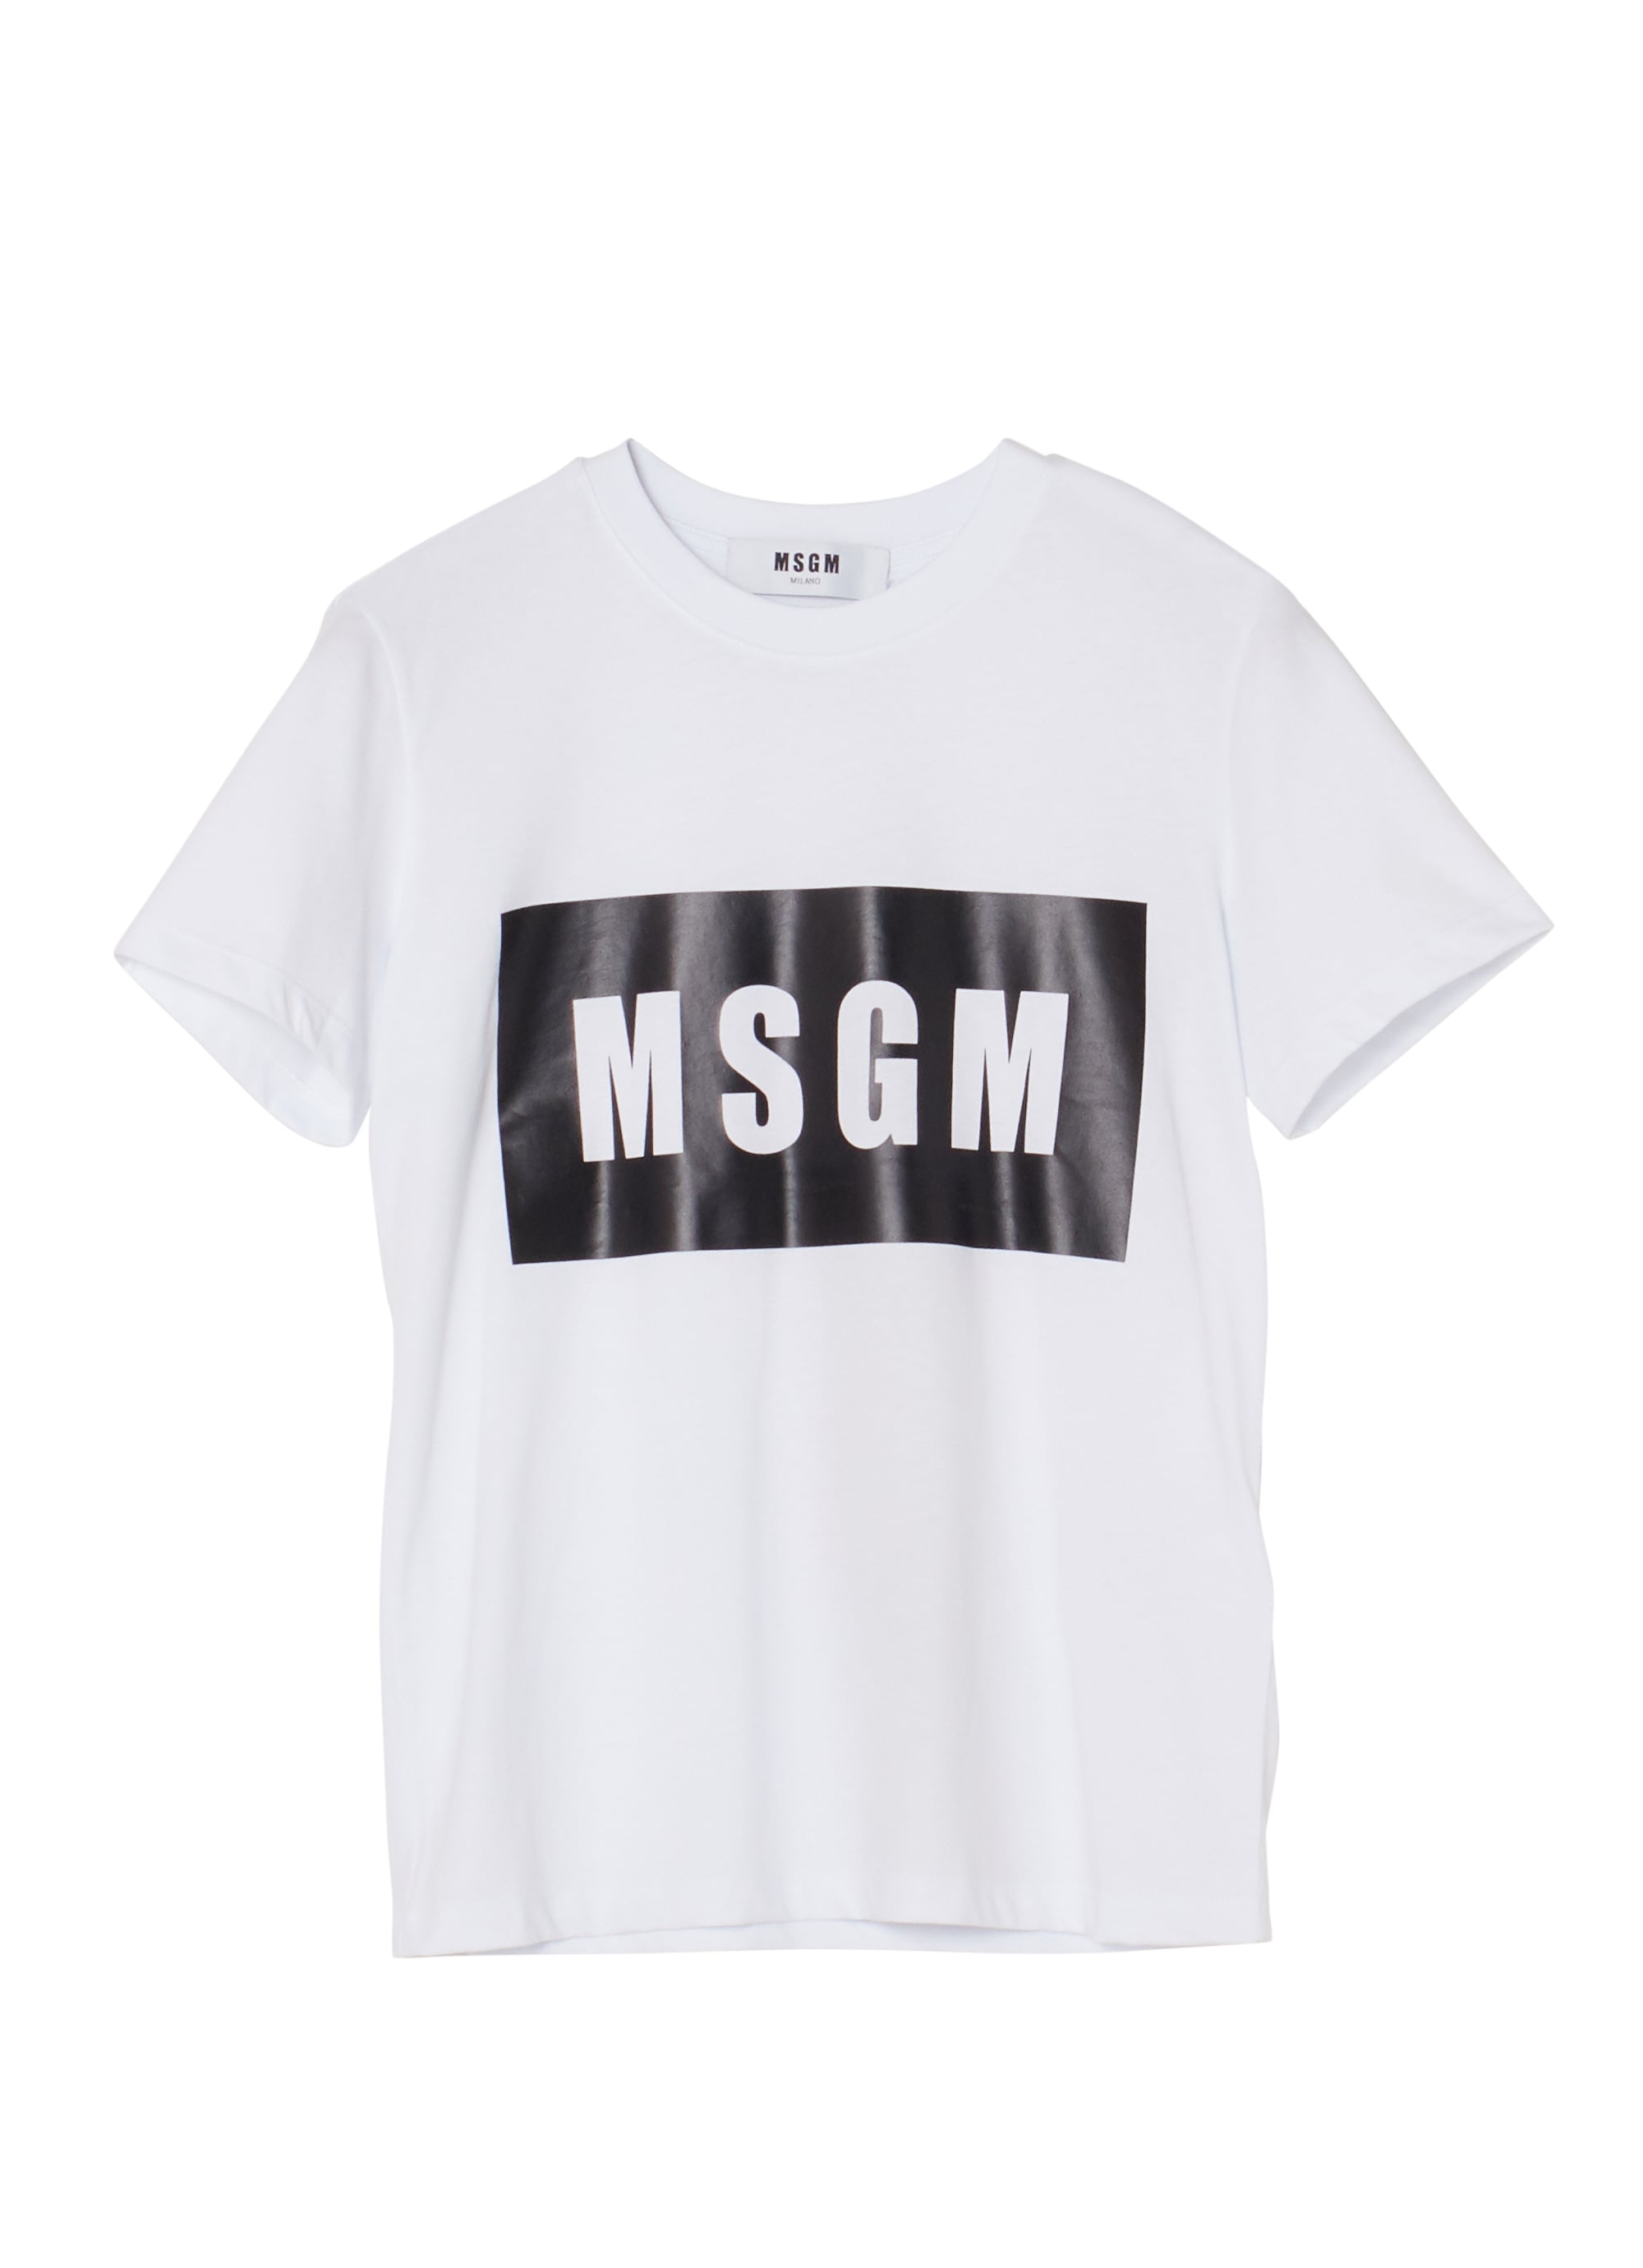 イタリア製 MSGM 半袖Tシャツ レディースXSサイズ 2741MDM95